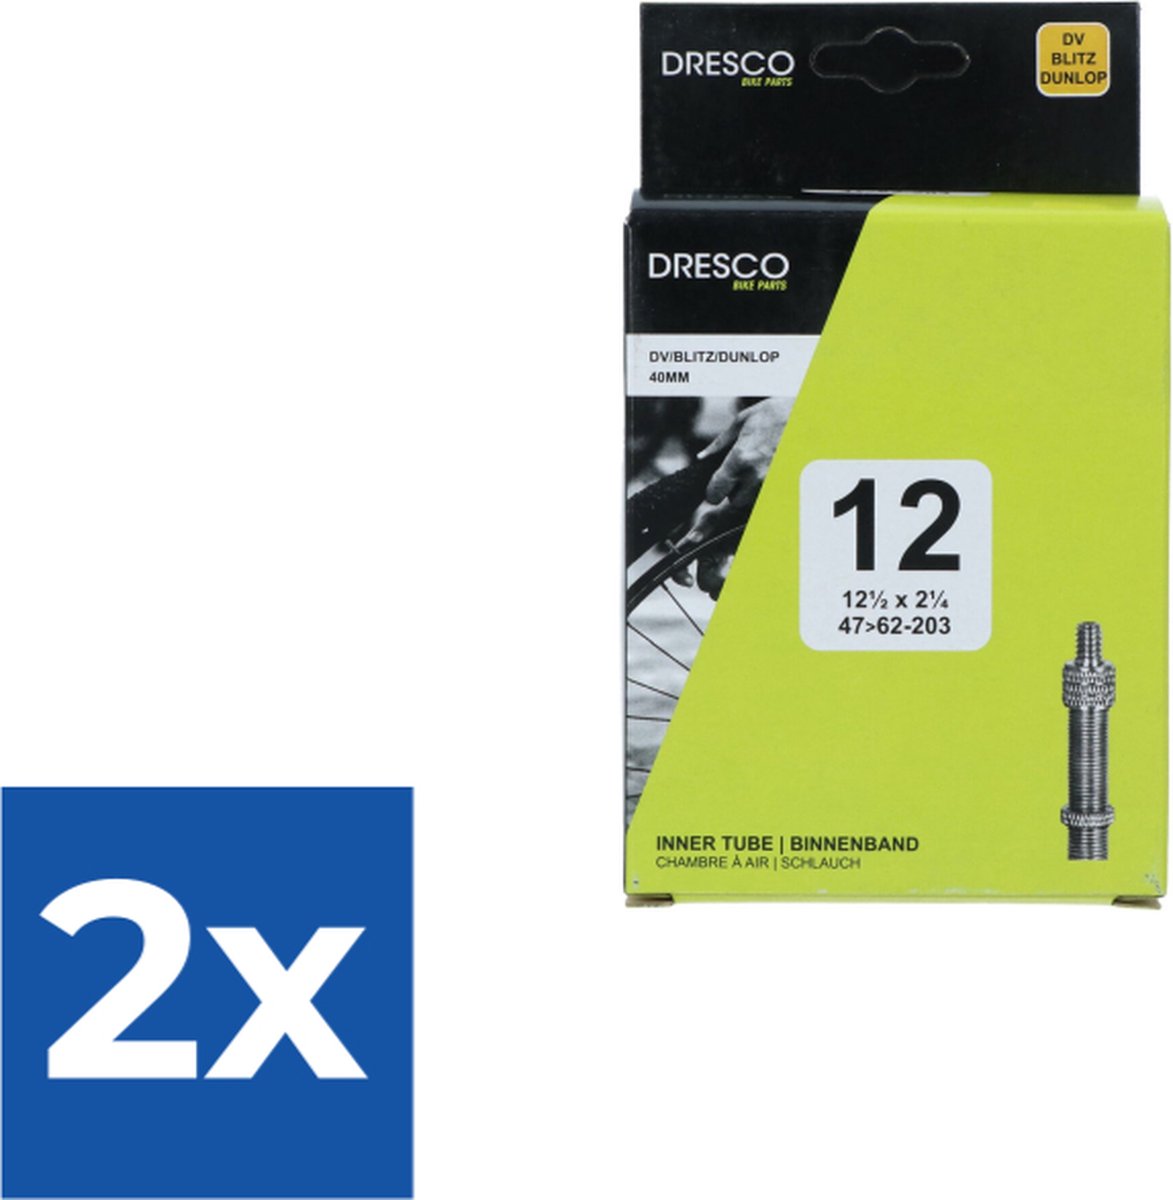 Dresco Binnenband 12 x1 1/2 x 2 1/4 (47/62-203) Dunlop 40mm - Voordeelverpakking 2 stuks